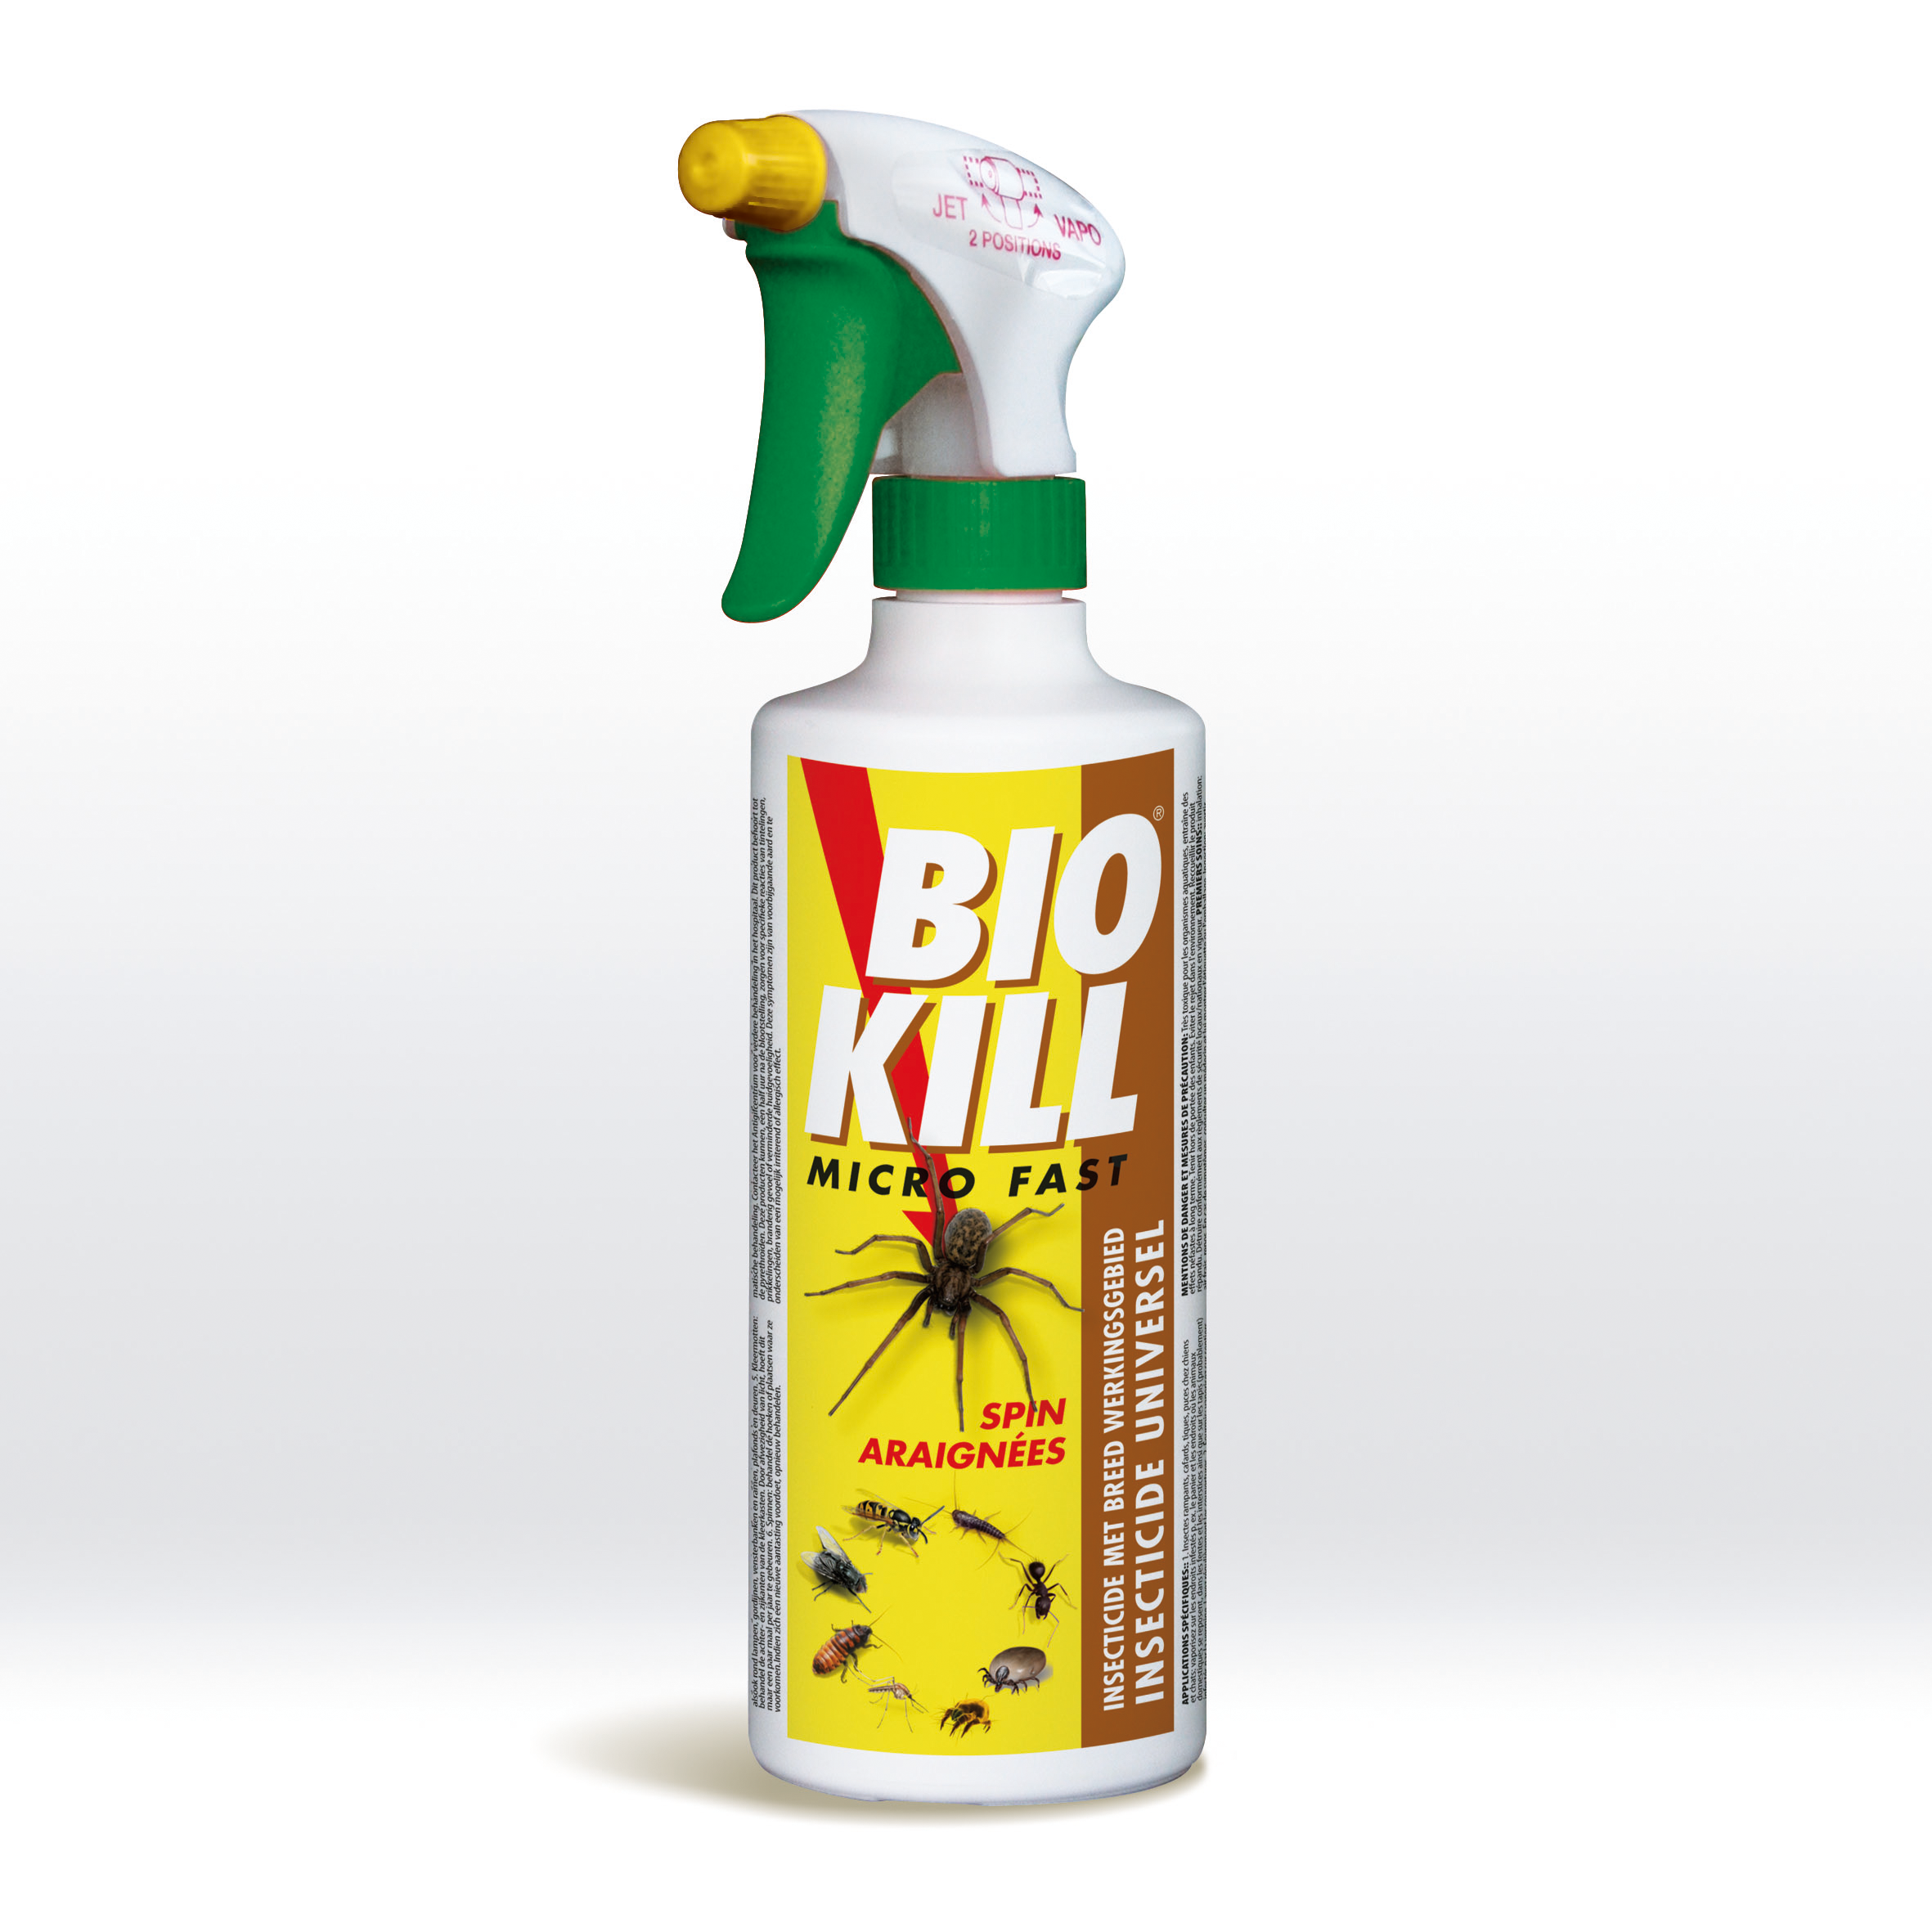 Bio Kill Micro-Fast (2916B) - Araignées 500 ml image